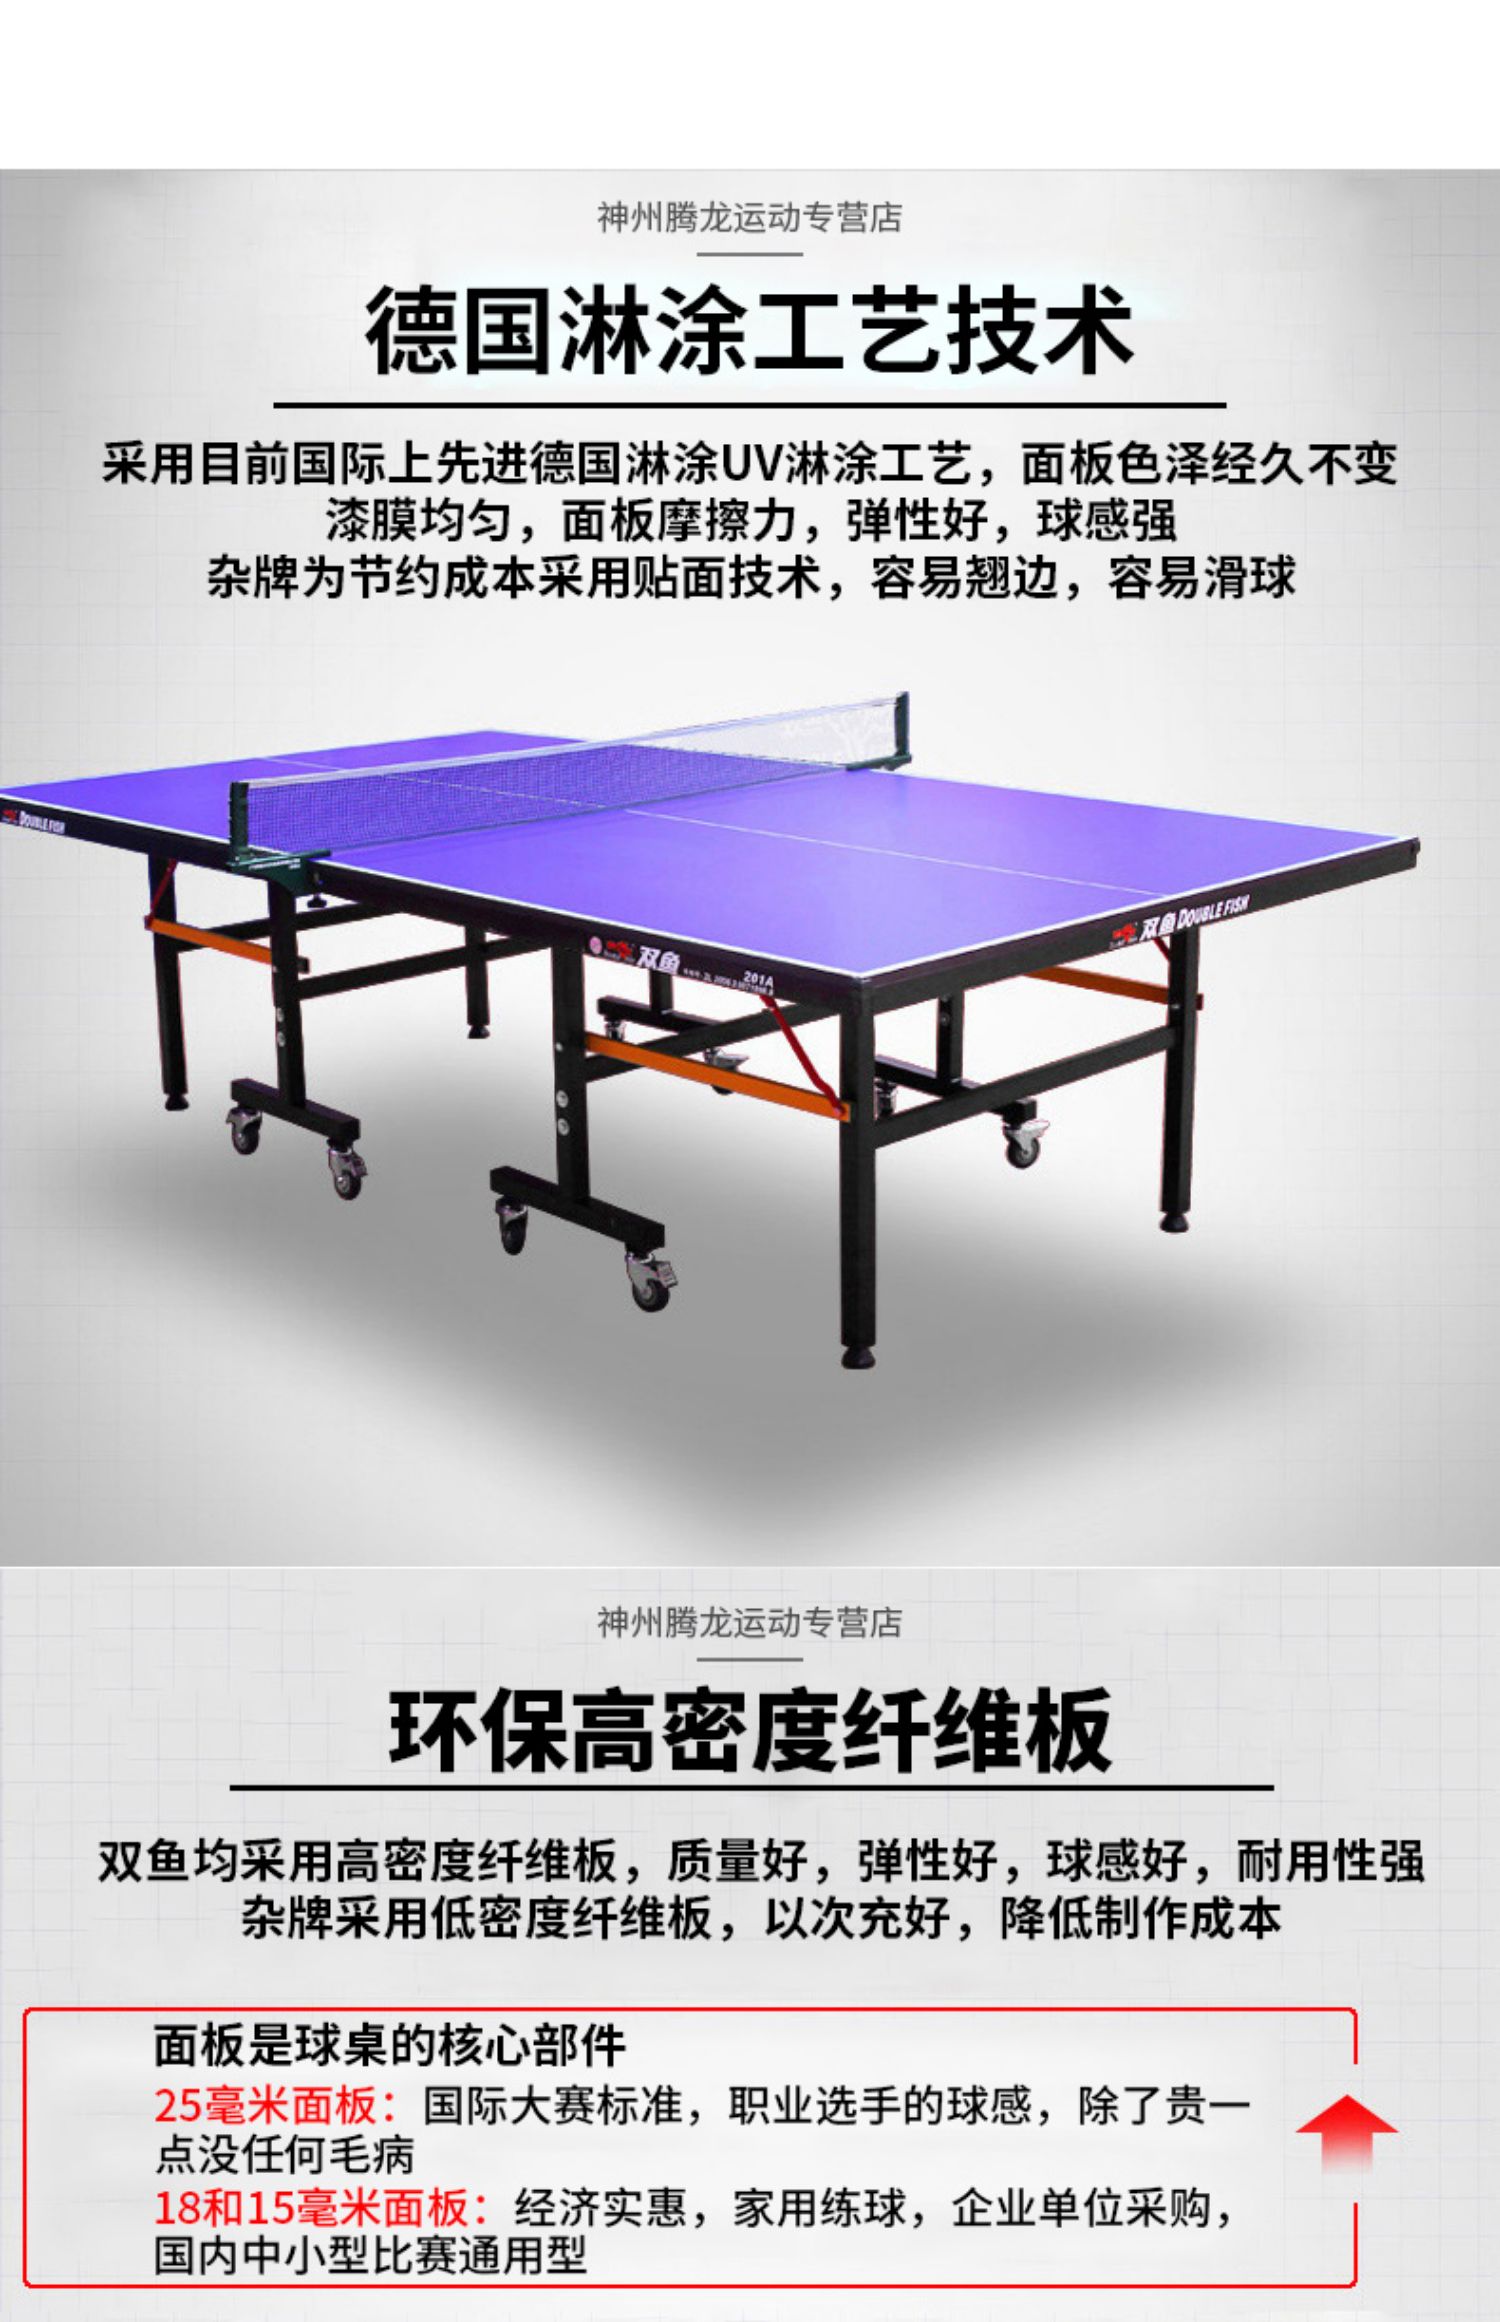 双鱼乒乓球桌家用带轮折叠移动式球台室内标准家庭乒乓球案子201a